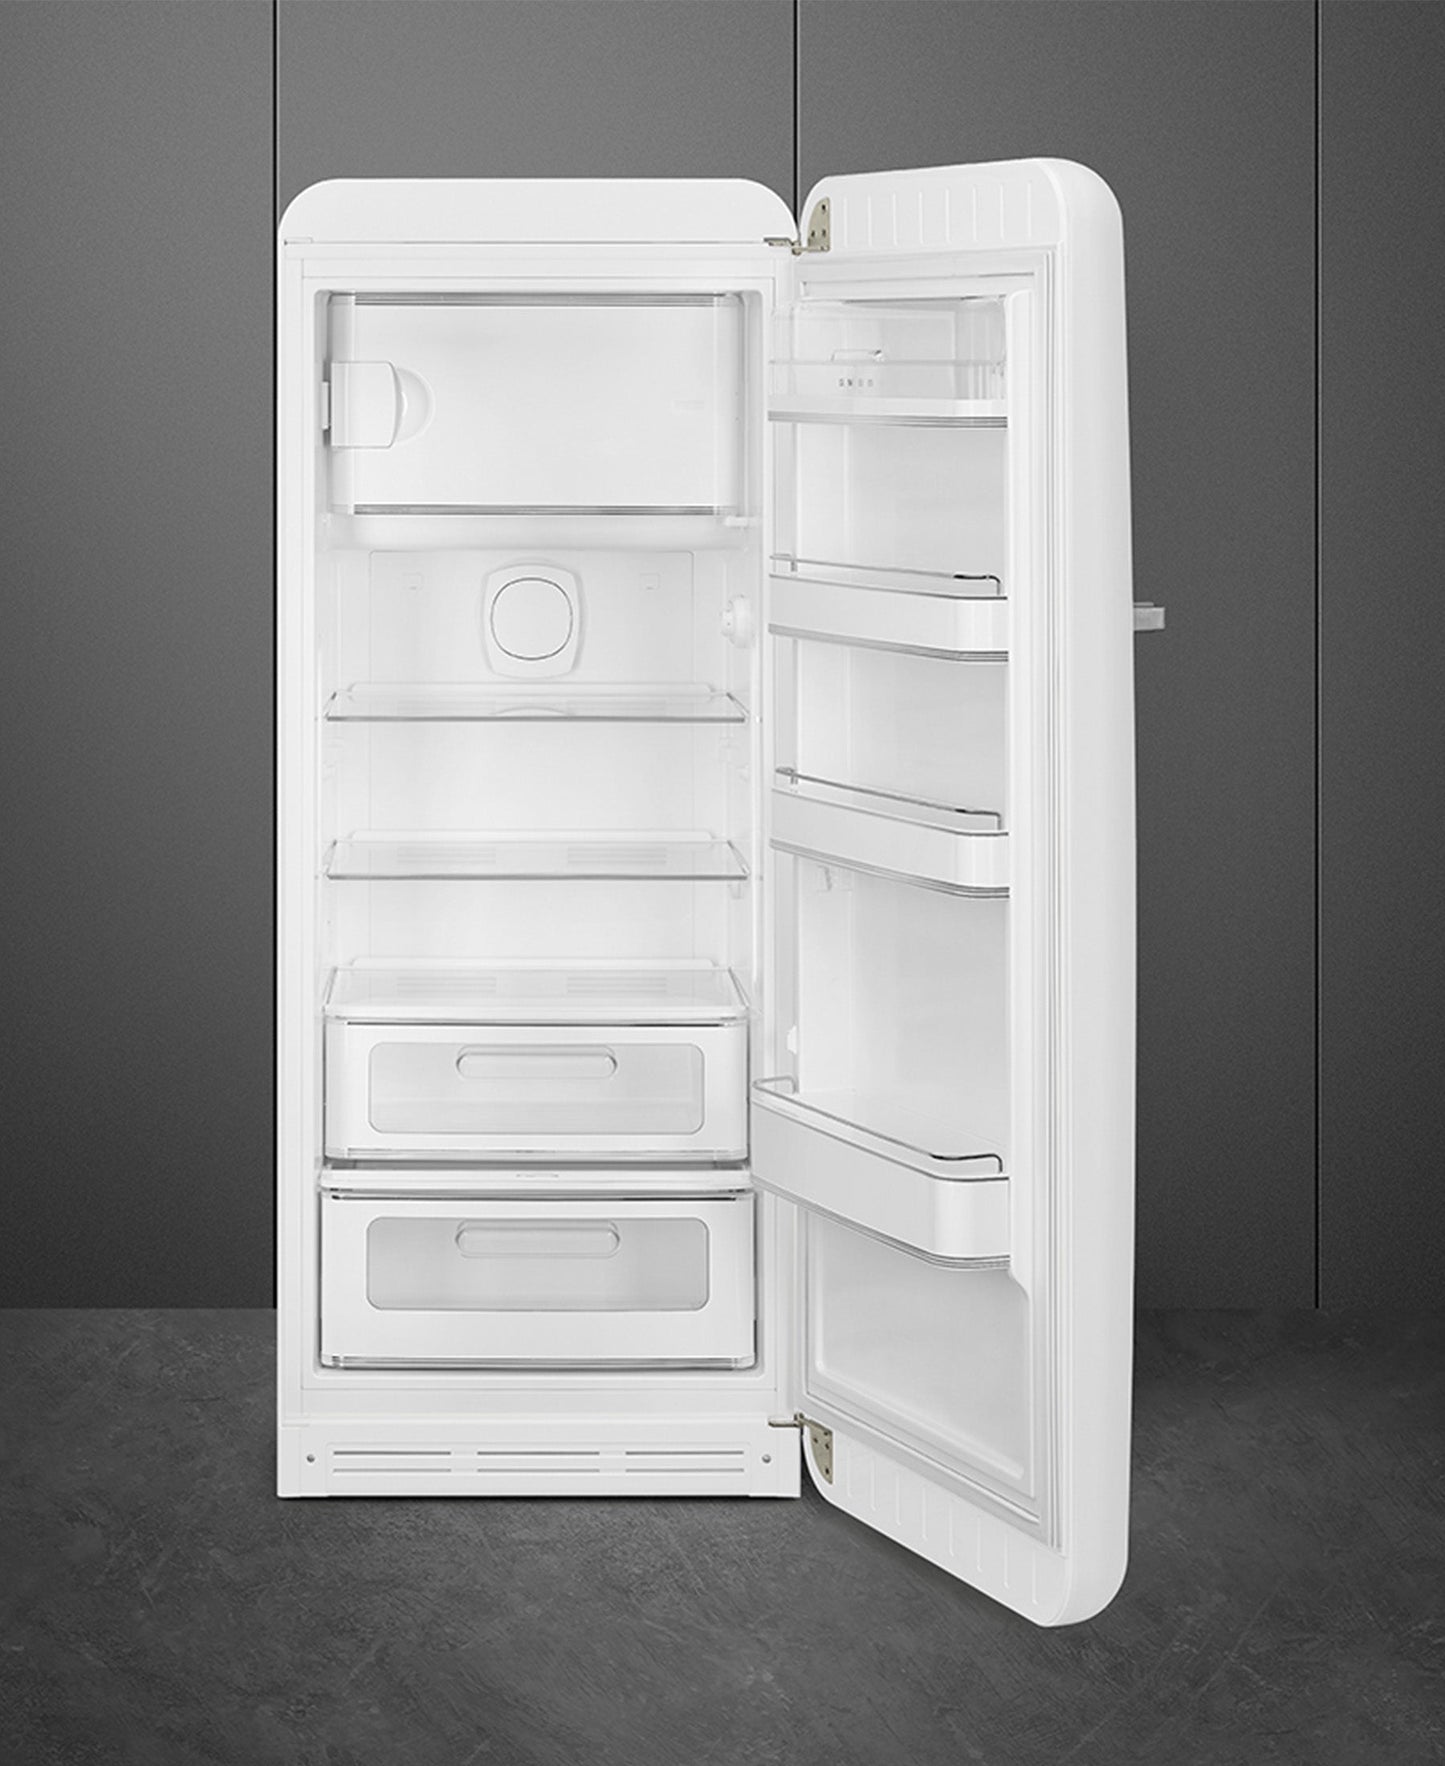 Smeg Retro Refrigerator - White